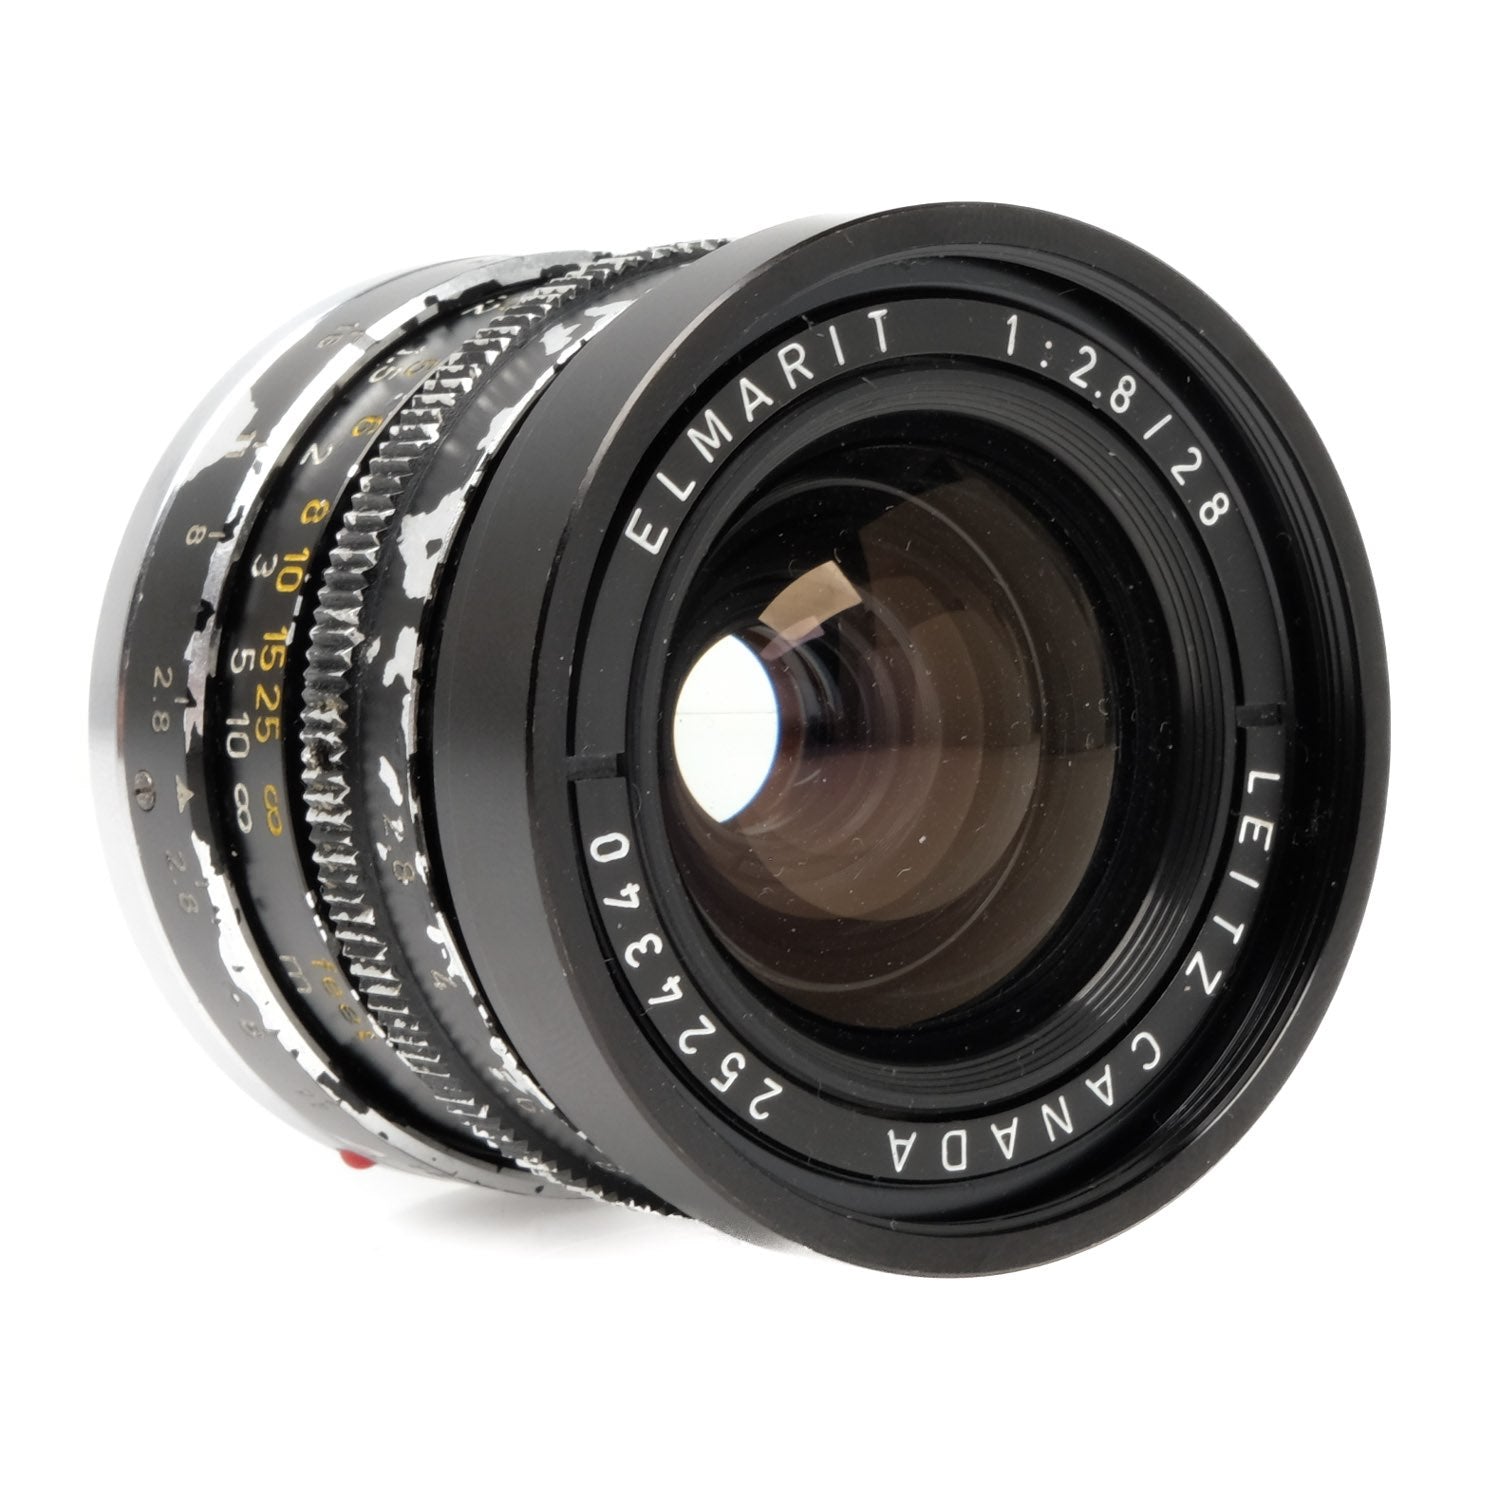 Leica 28mm f2.8 Elmarit V2 2524340